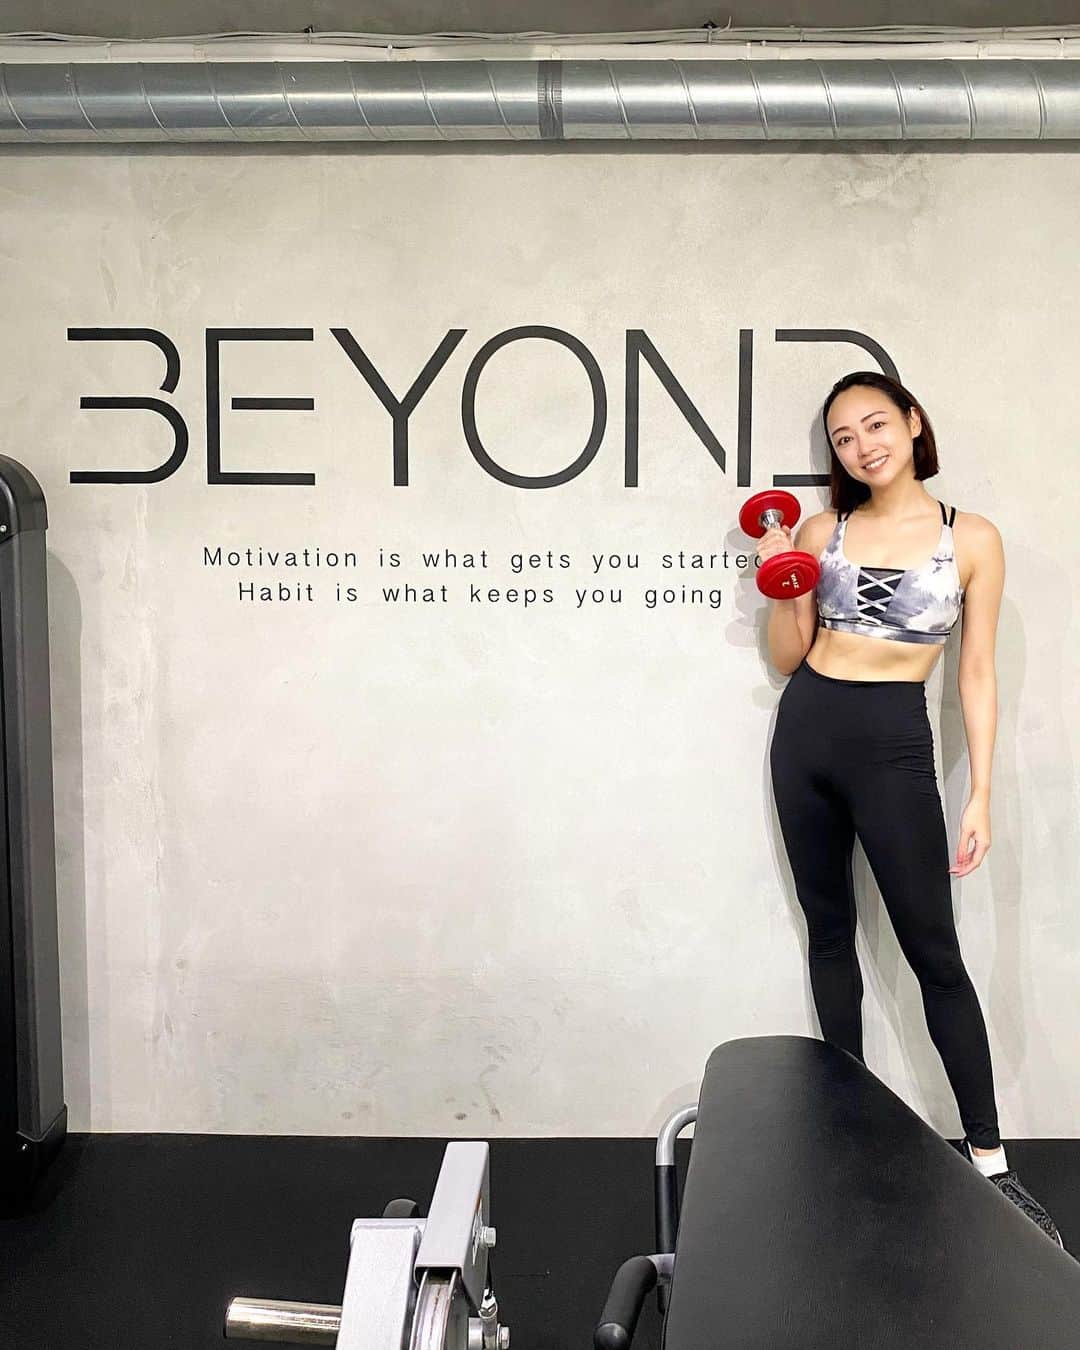 石田美奈子のインスタグラム：「workout💪🔥  最近なかなかトレーニングできていなかったので、久々の#パーソナルトレーニング 😊  全国に70店舗以上を展開するBEYOND GYMに行ってきました✨  綺麗で広い店内で、マシンも充実🏋️ 気になるお腹周りとお尻を中心にメニューを組んでもらってトレーニングしてきました🍑  BEYOND GYMは大会に出ているトレーナーさんが多数在籍しているので、指導レベルが高い👏 担当していただいたトレーナーも大会1ヶ月前の減量期とのことで、体が凄すぎて説得力抜群でした💪 私は食事管理が苦手なので、無理なく続けられる食事管理のこともたくさん教えていただいて勉強になりました🥰  おしゃれなお水とトレーニング後のプロテインをもらえたのも嬉しい！♡  通常5,500円の体験トレーニングが9月中は無料らしいので、パーソナルトレーニングジムをお探しの方は是非行ってみてください😊 オススメ☺︎☺︎☺︎  @beyondgym  💪 → #minako_workout  #BEYONDGYM #beyondgym #ビヨンドジム #workout #gym #training #ワークアウト女子 #トレーニング女子 #シェイプアップ #筋トレ女子 #ダイエット #麻布十番ジム #ダイエット生活 #ダイエットごはん #筋トレ女子と繋がりたい #ジムコーデ #トレーニングウェア #ボディメイク #美ボディ」